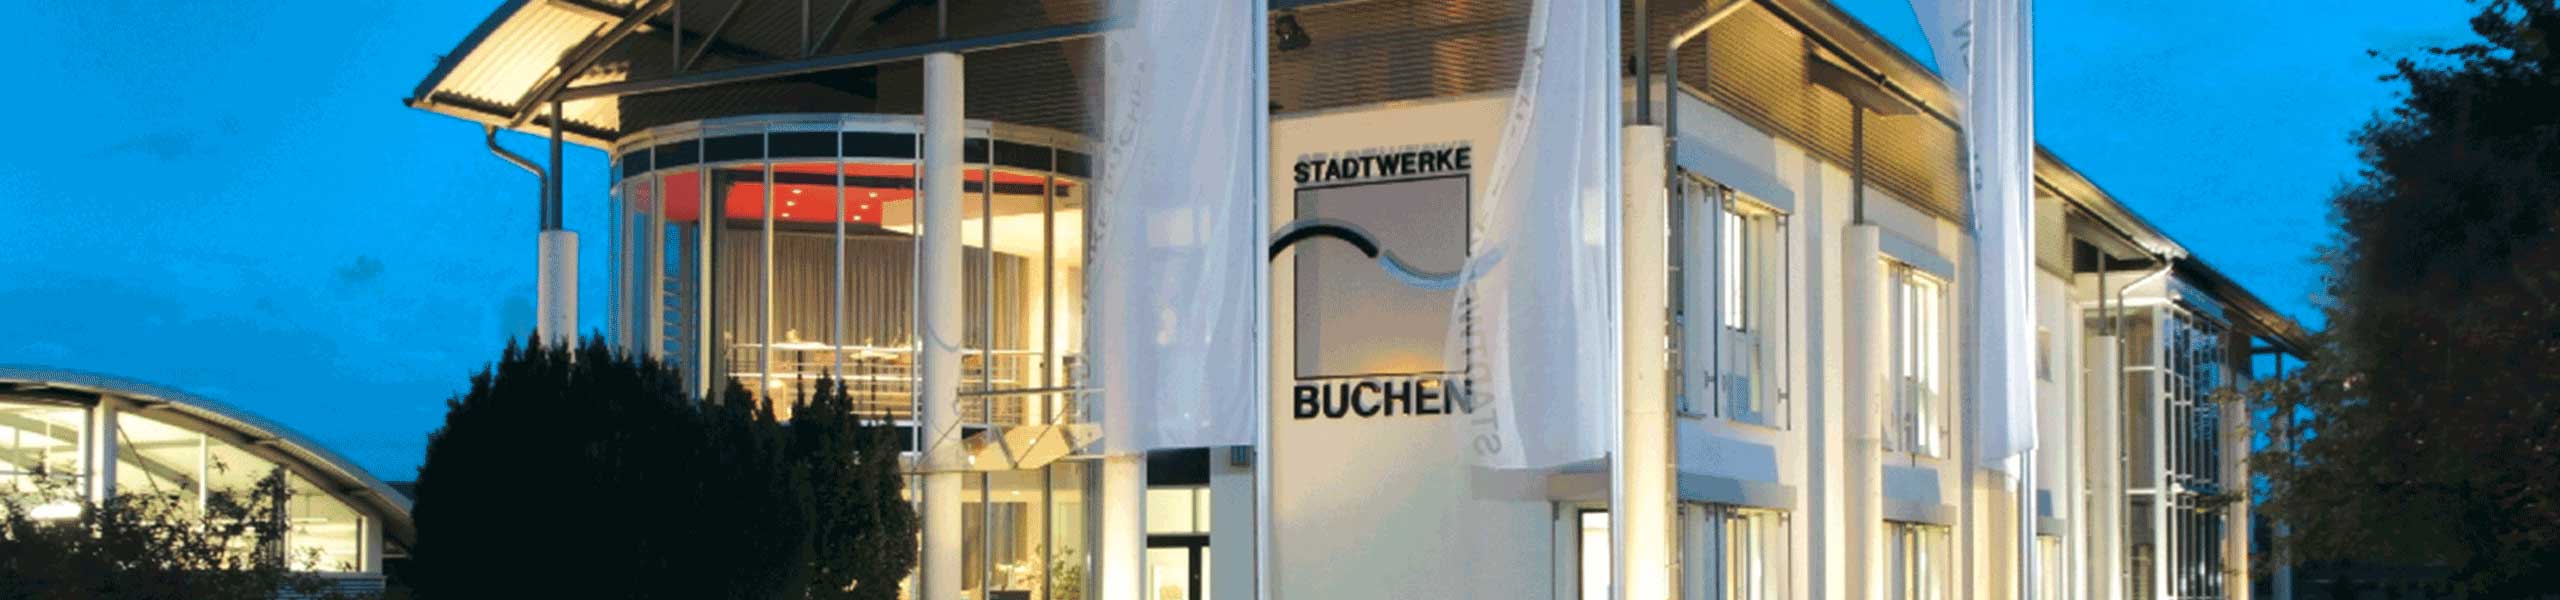 Stadtwerke Buchen GmbH & Co KG - Sonstige meldepflichtige Stromverbraucher anmelden